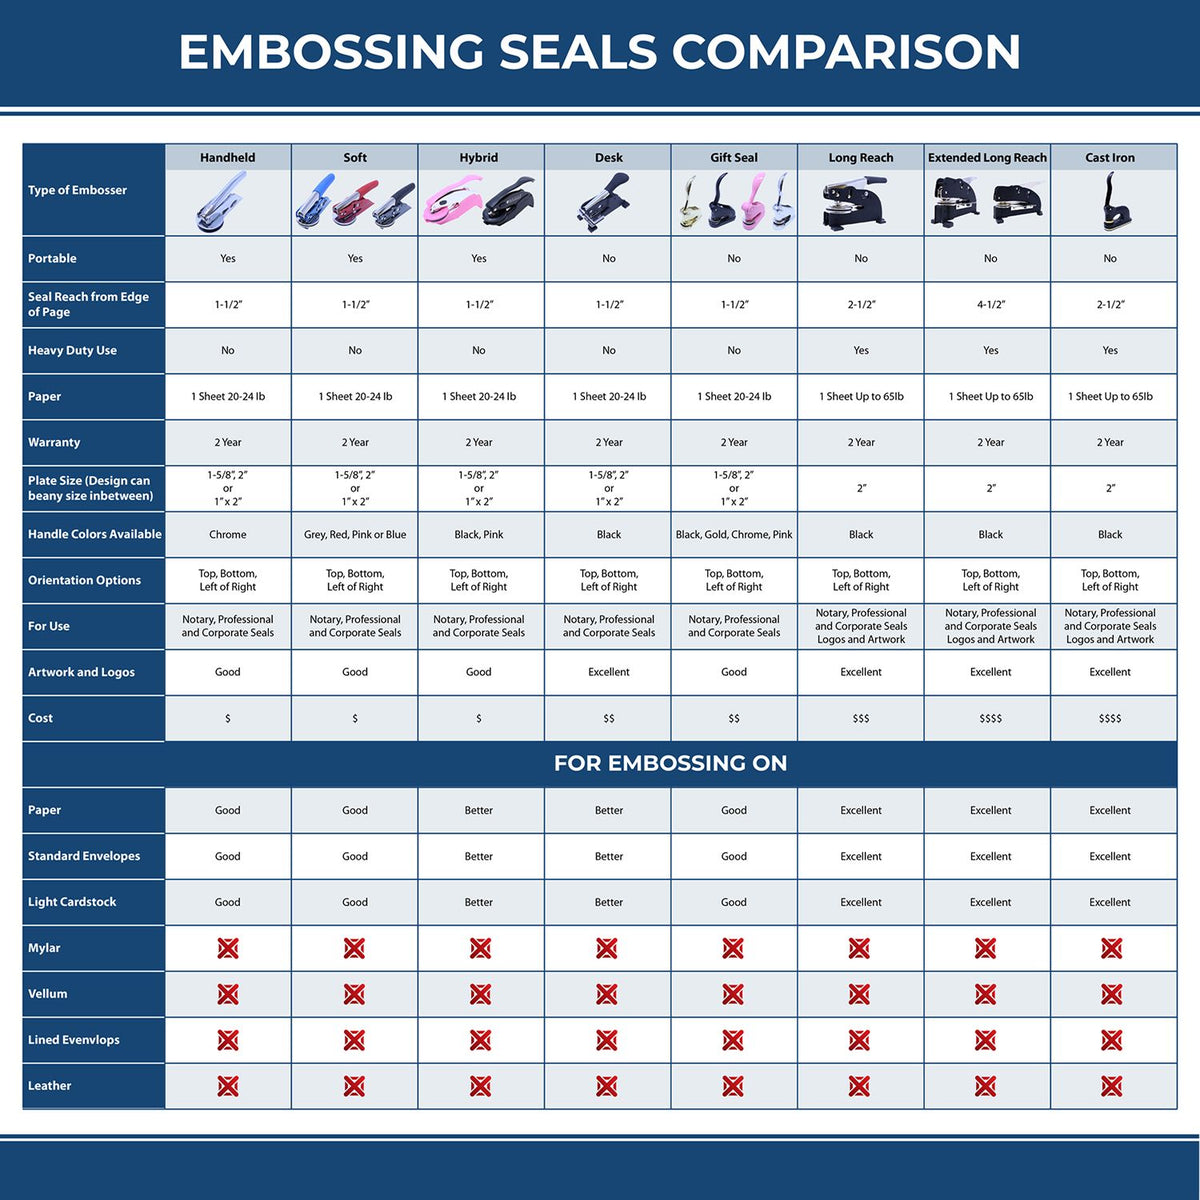 Geologist Pink Hybrid Handheld Embosser 3039GEO Embossing Seal Comparison